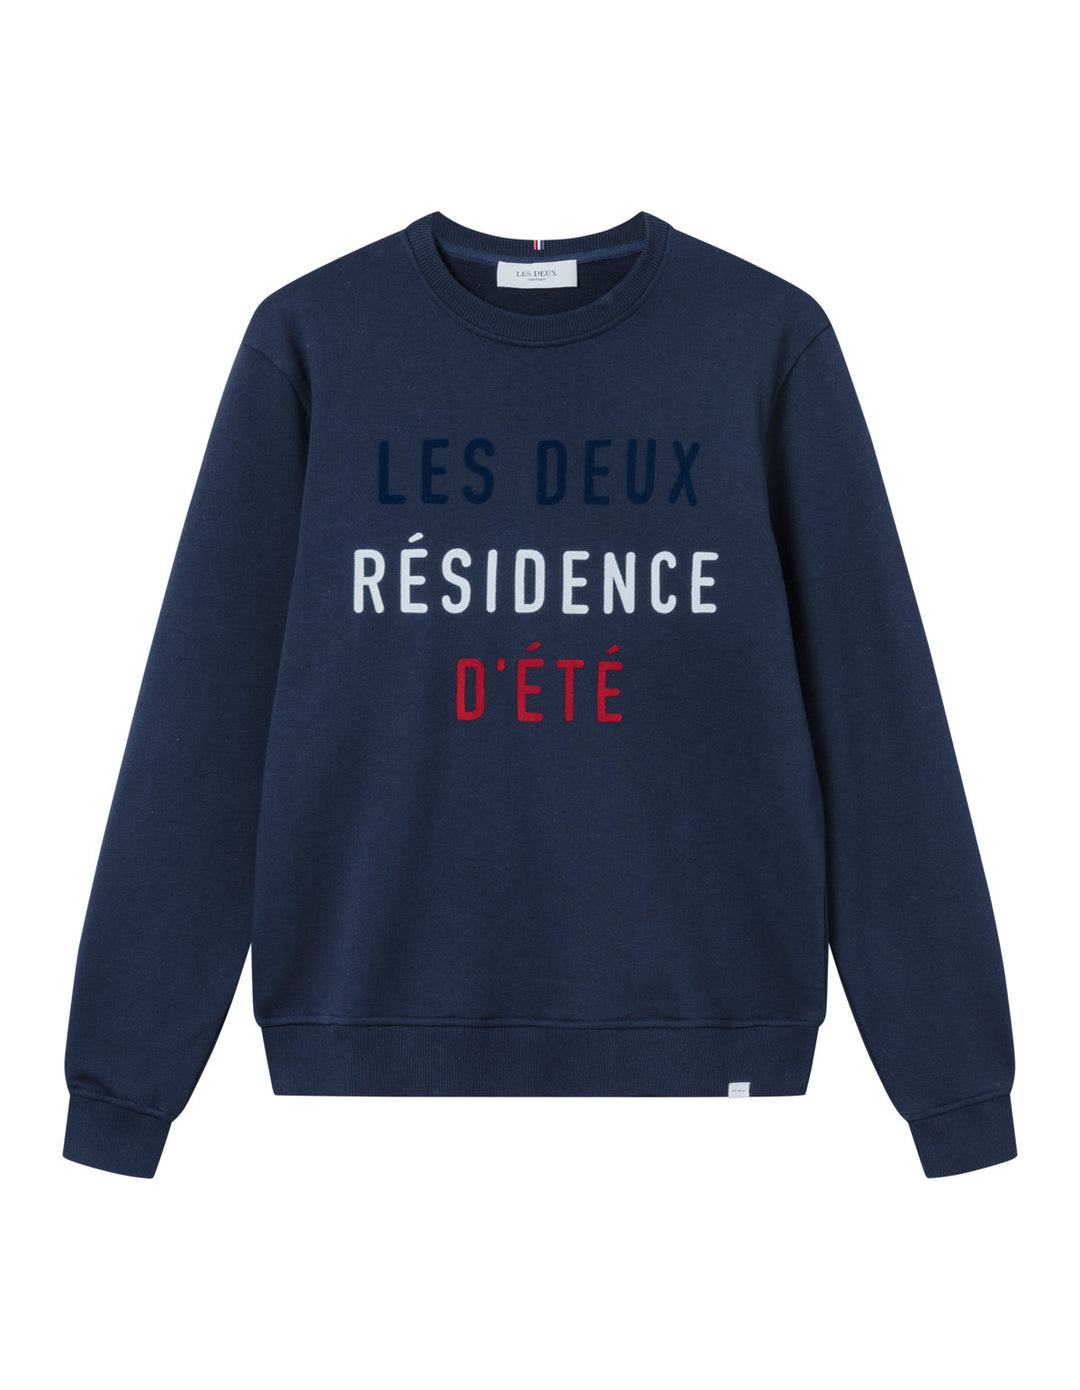 Residence Sweatshirt